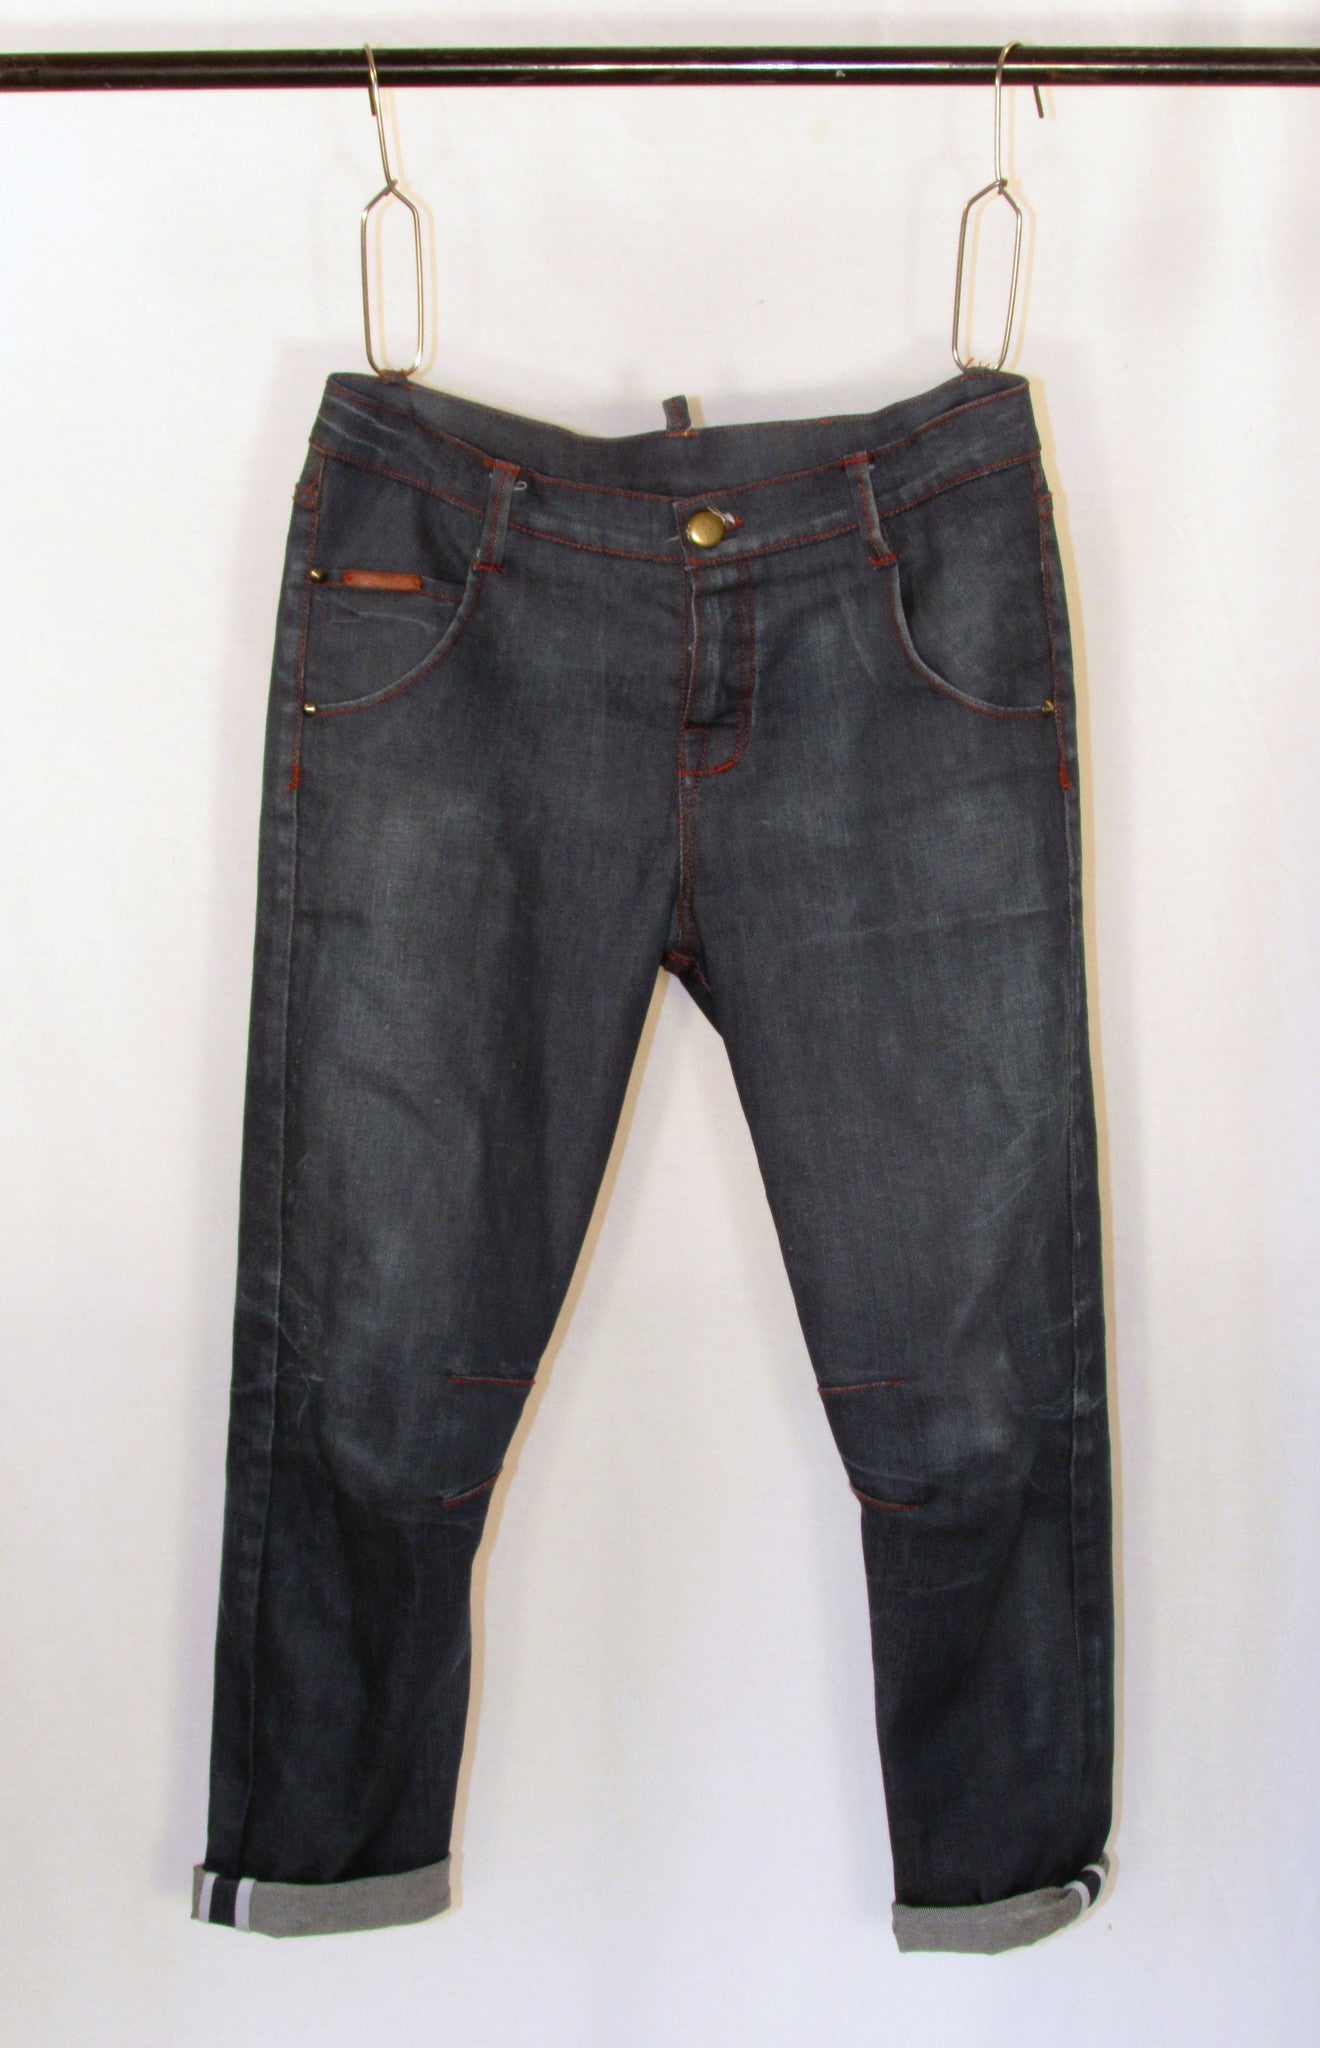 sawyer slim jeans - denim garage wash dimes &